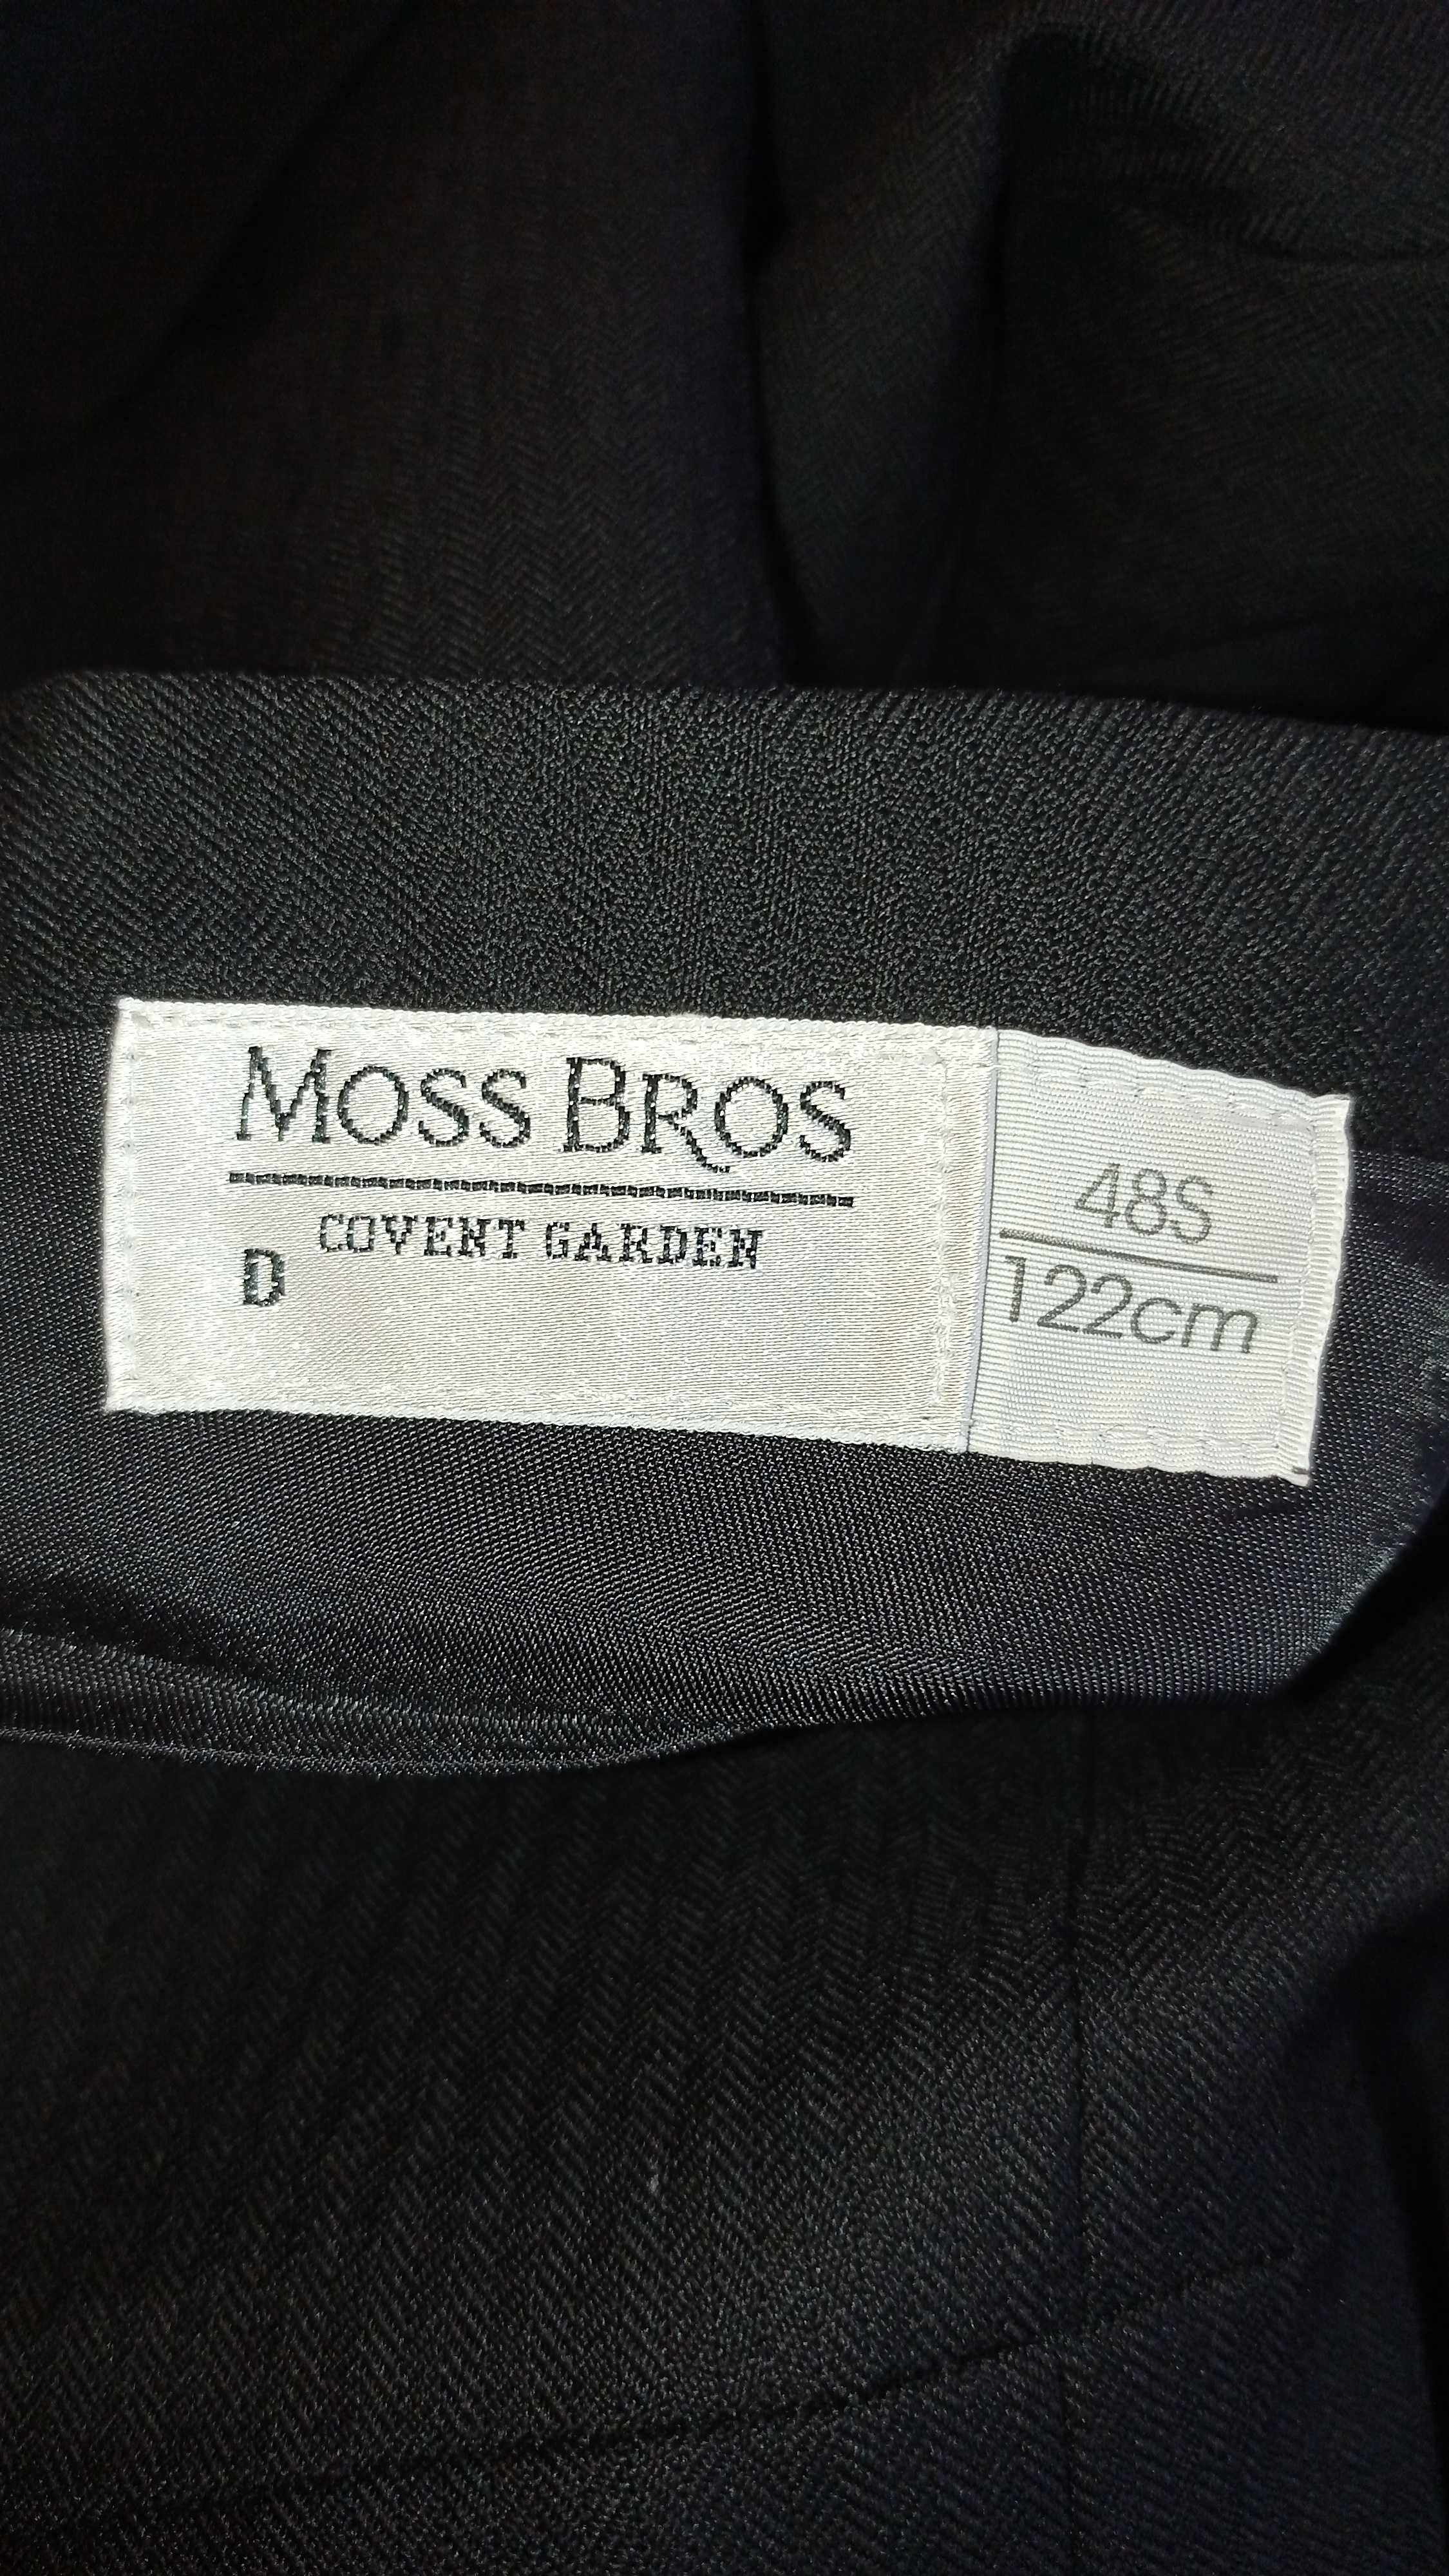 Фрак Moss Bros Covent Garden батал